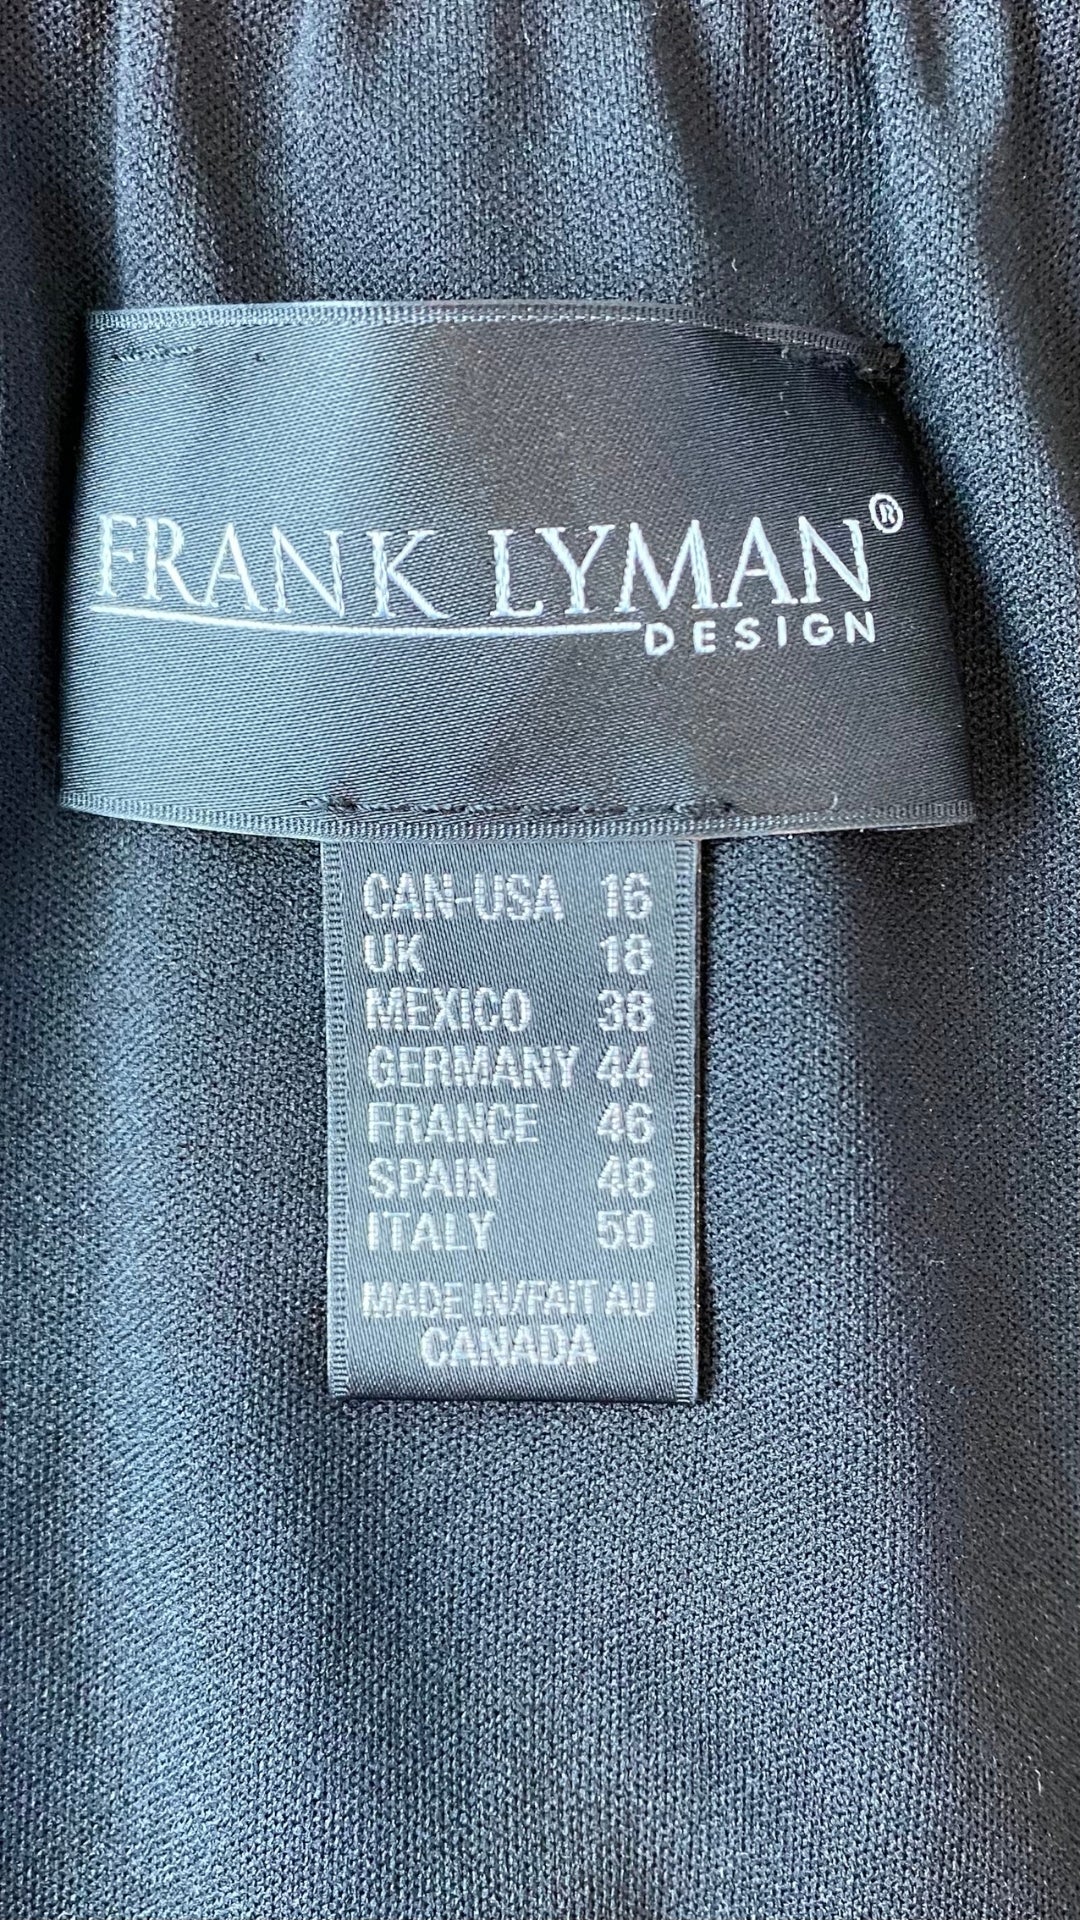 Haut ample fluide noir encolure extensible Frank Lyman, taille 16. Vue de l'étiquette de marque et taille.